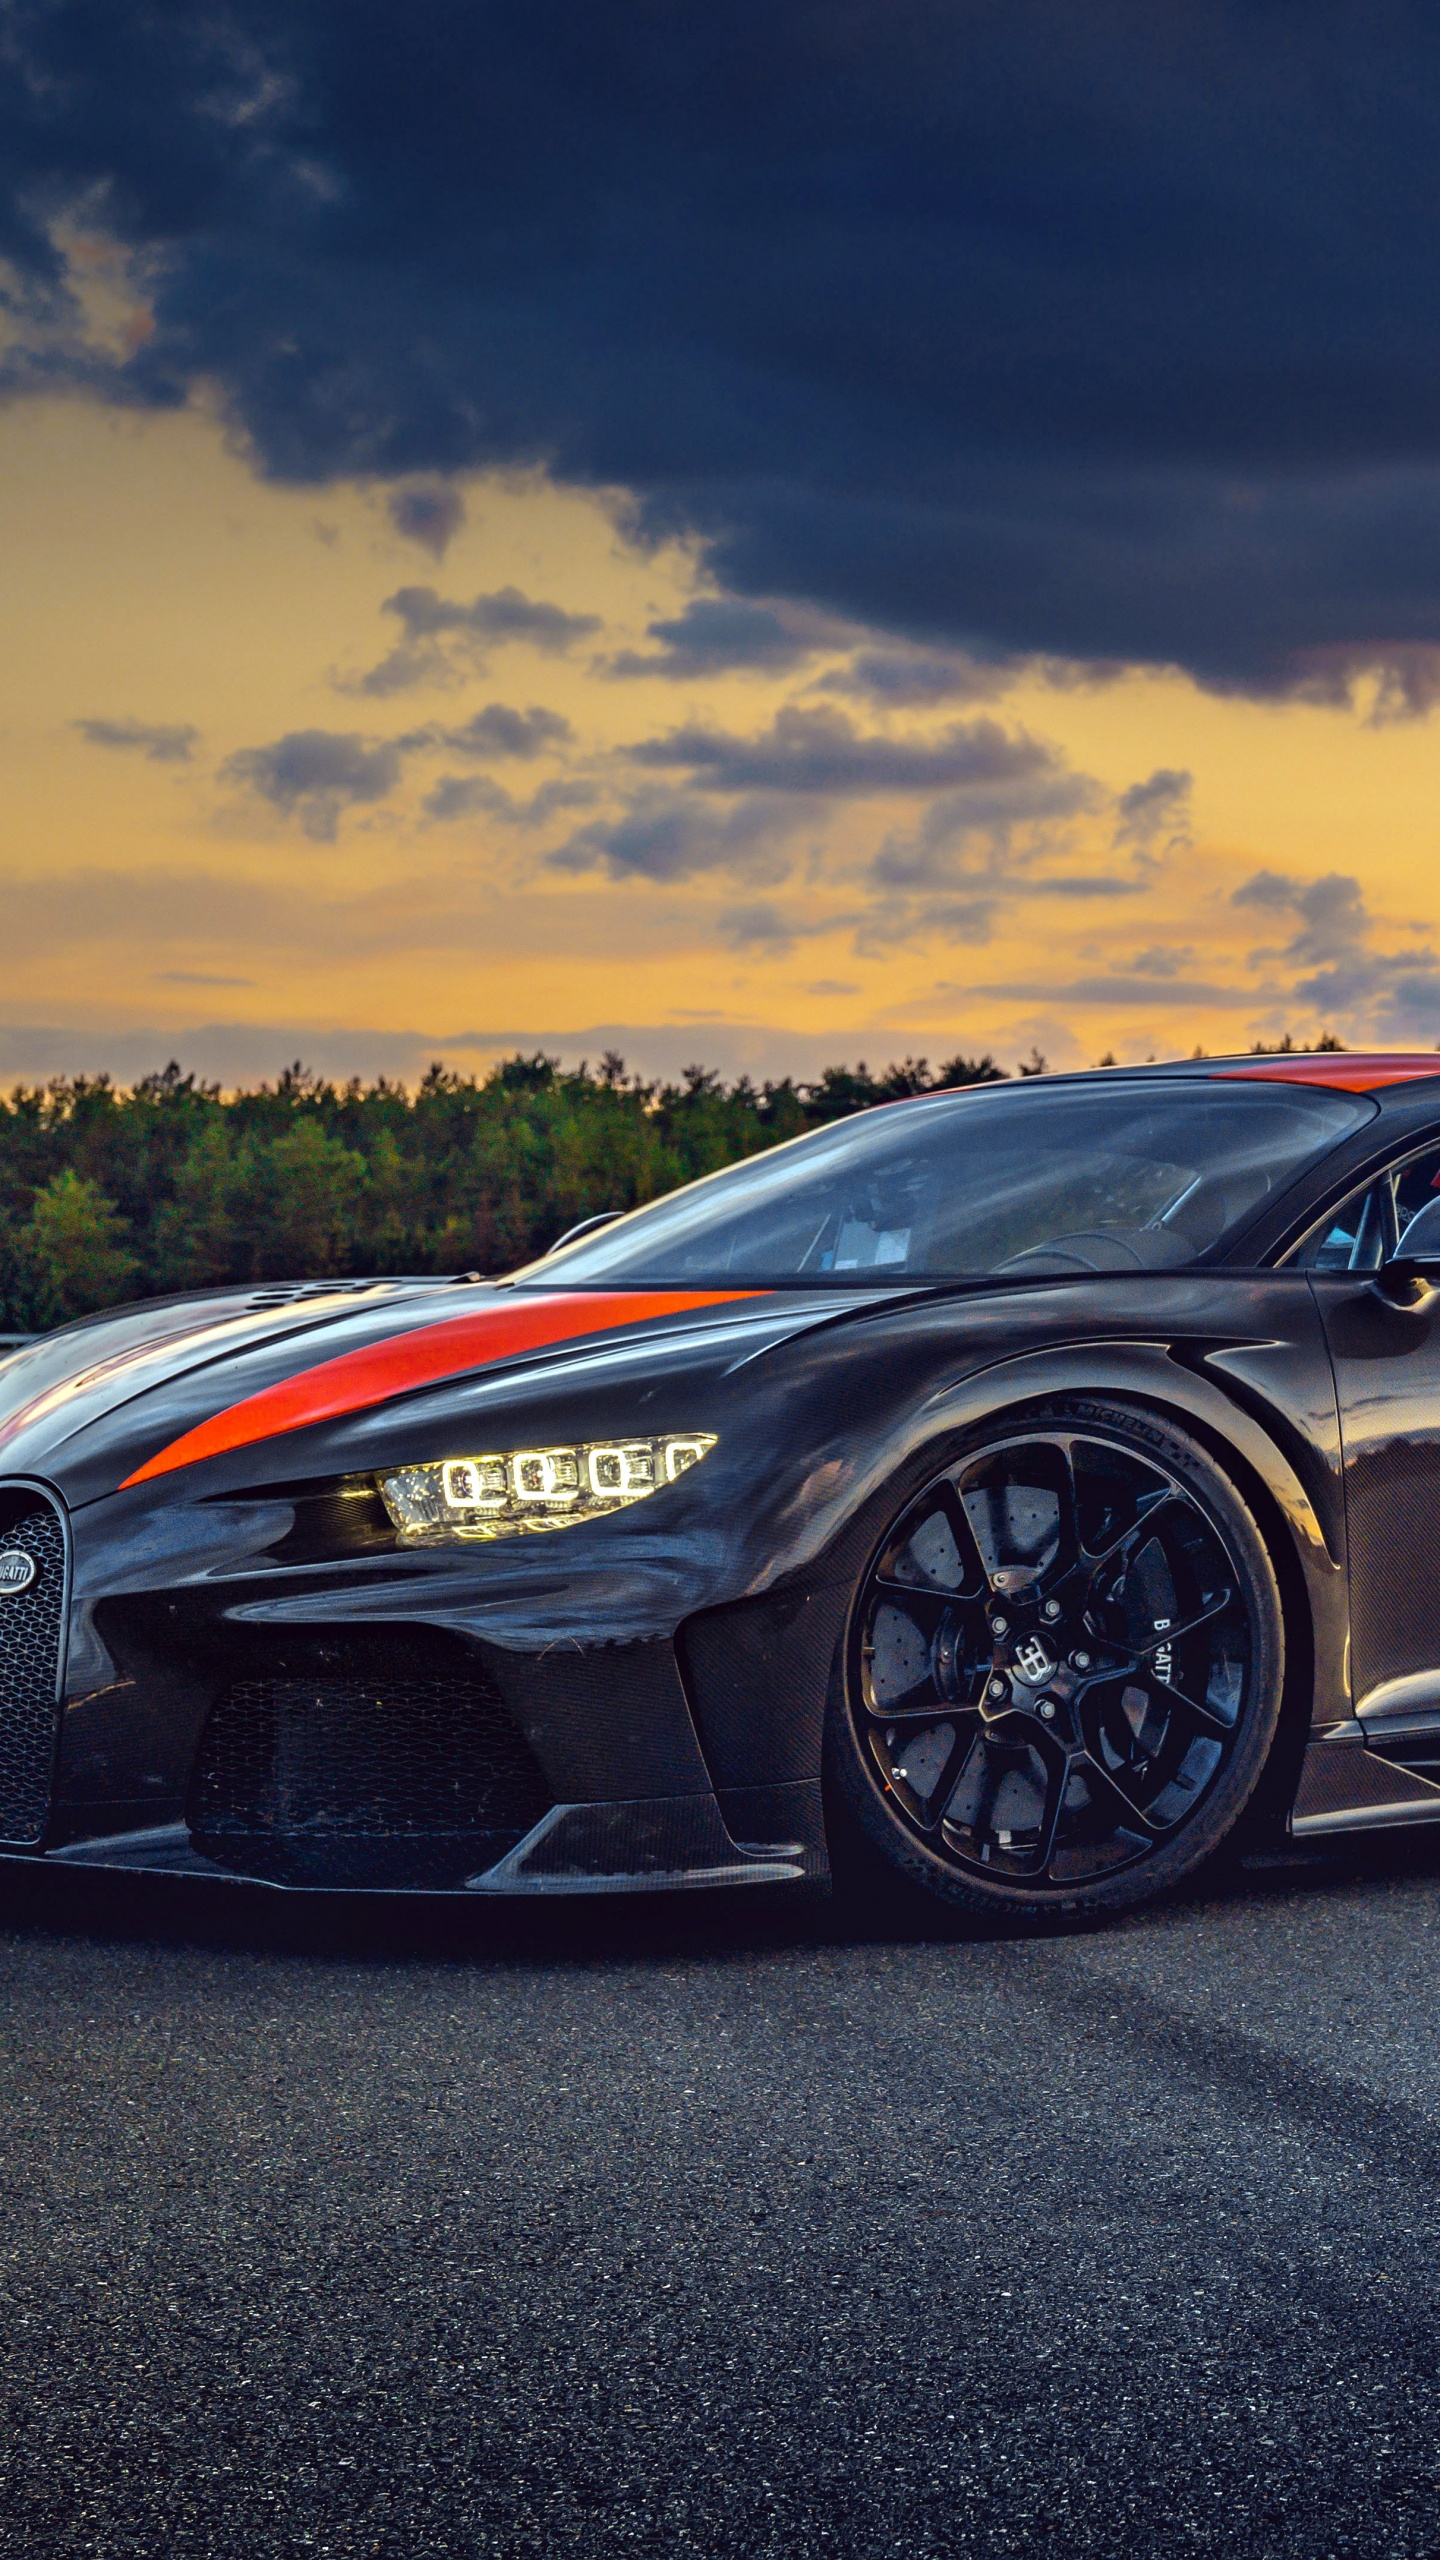 Tận hưởng cảm giác tốc độ mạnh mẽ với hình nền Bugatti Chiron Super Sport 300+, 4K, 5K, 8K. Bạn sẽ bị cuốn hút vào những khung cảnh đẹp như mơ với tốc độ kinh hoàng của siêu xe này.